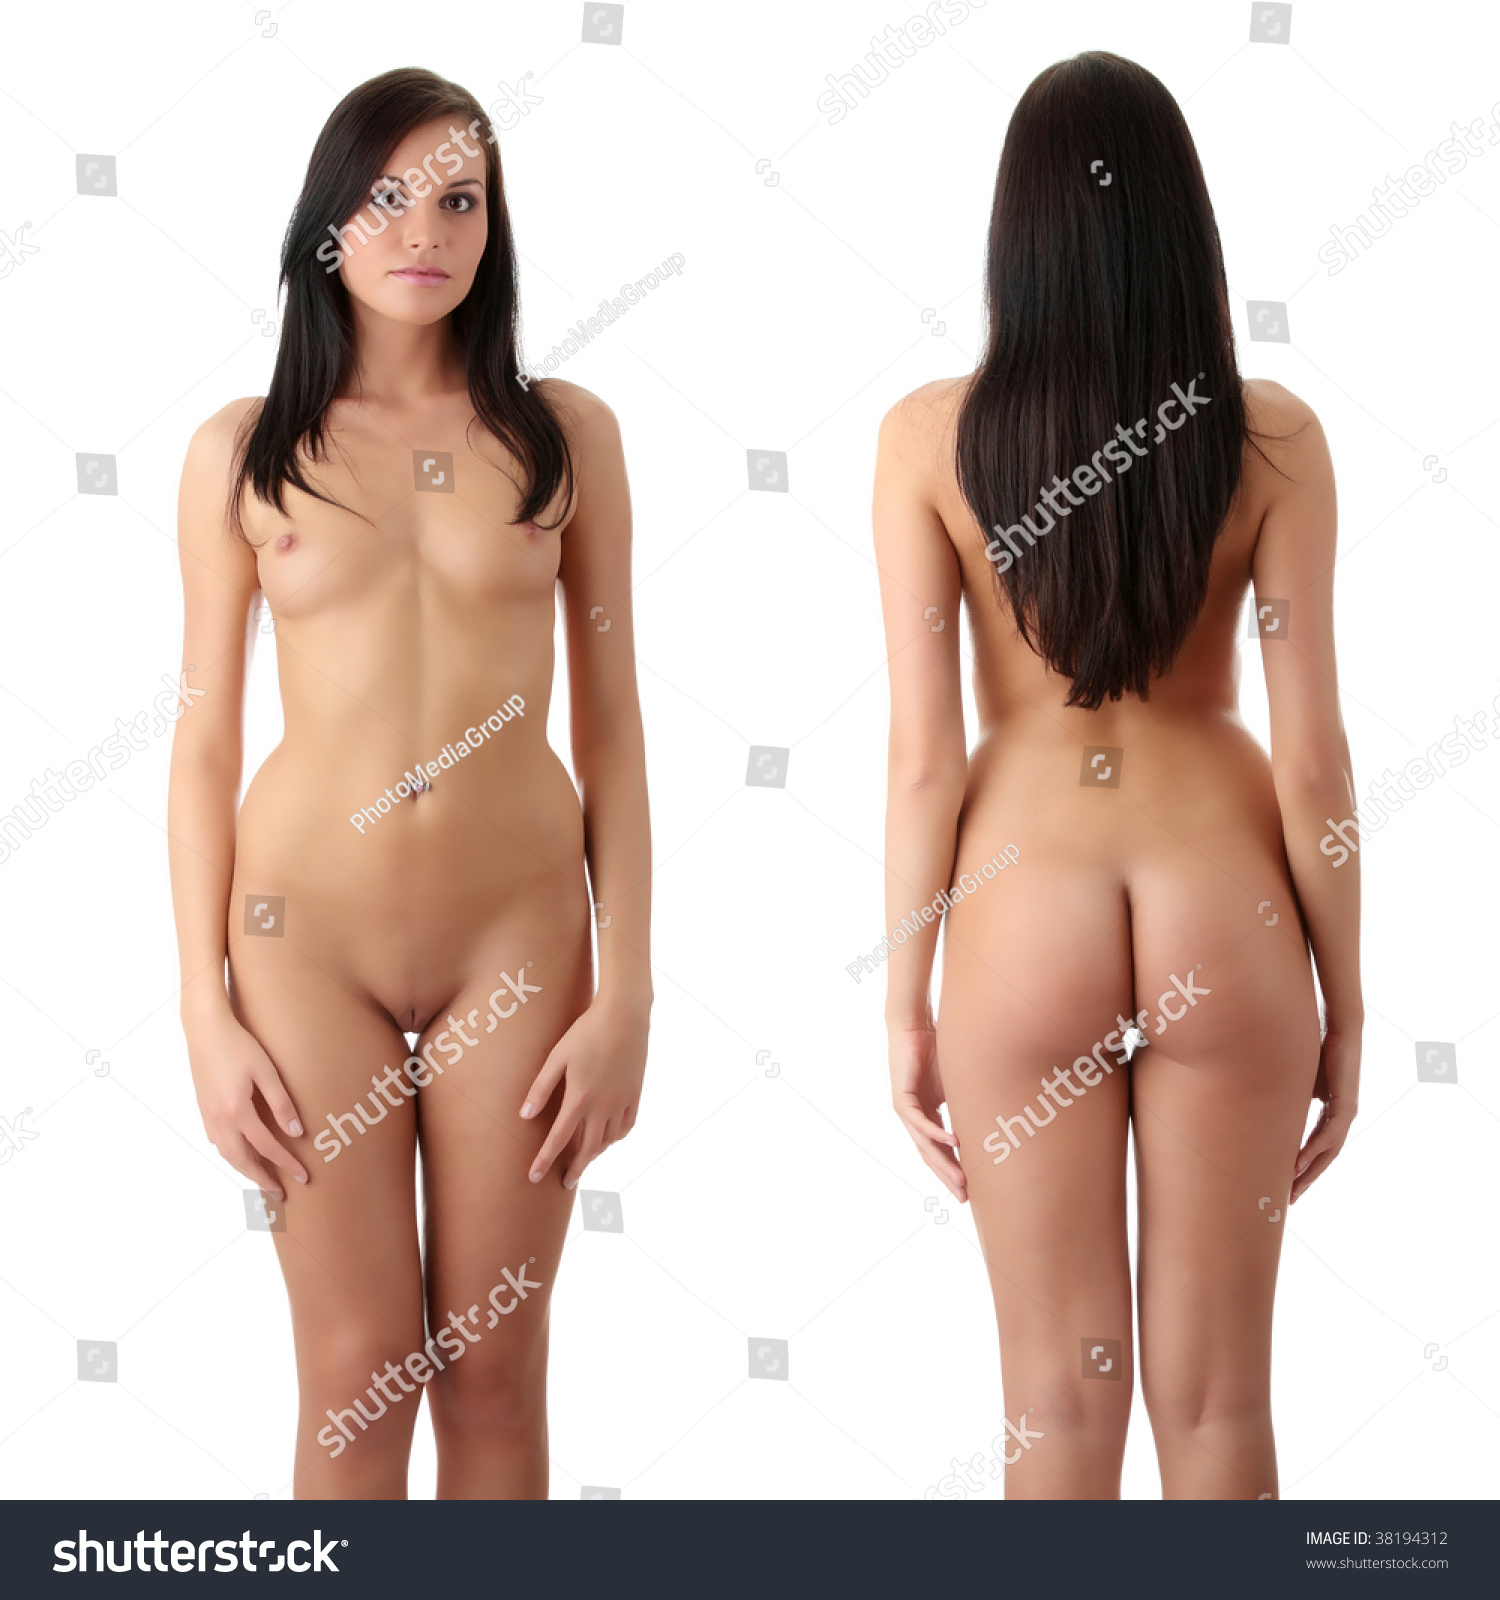 Nude Photos Of White Women 23